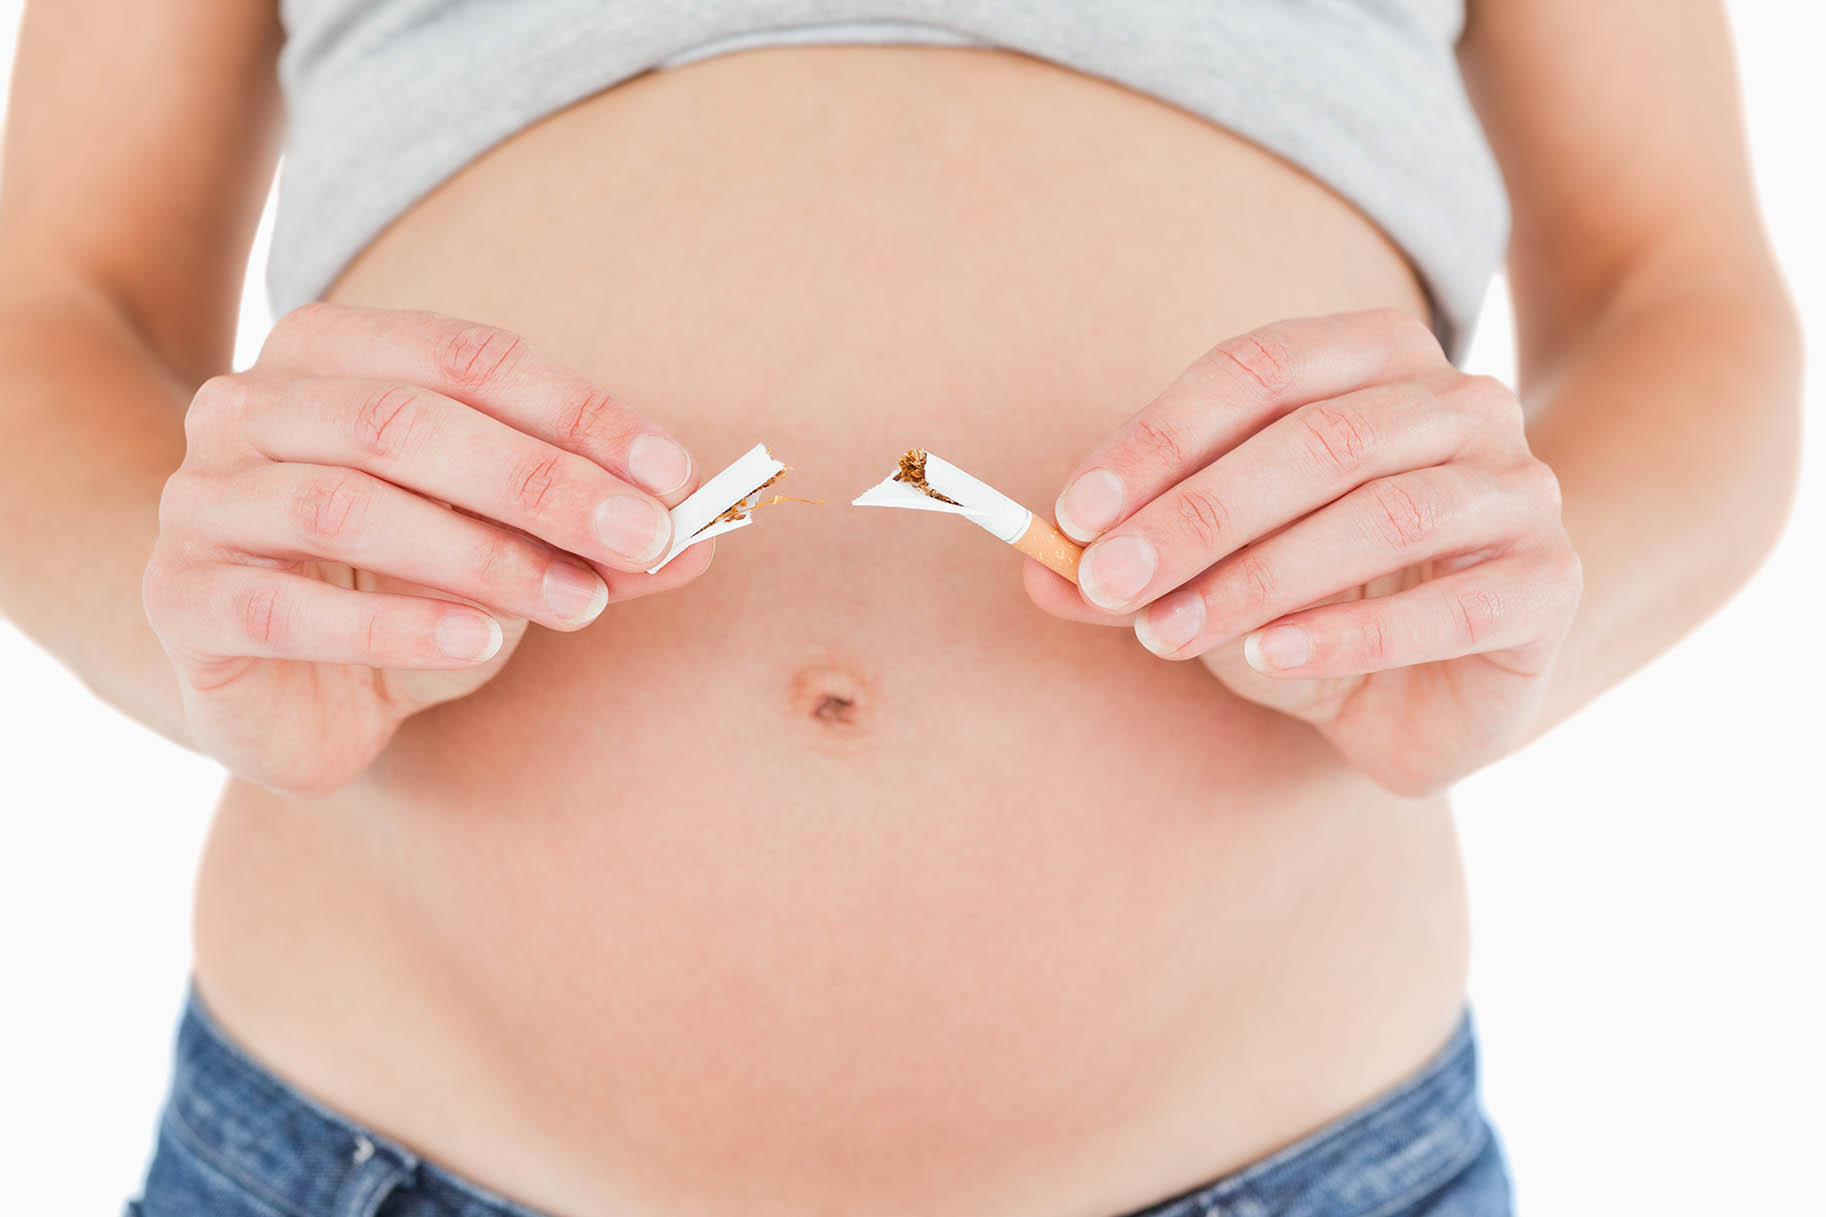 donna incinta spezza una sigaretta